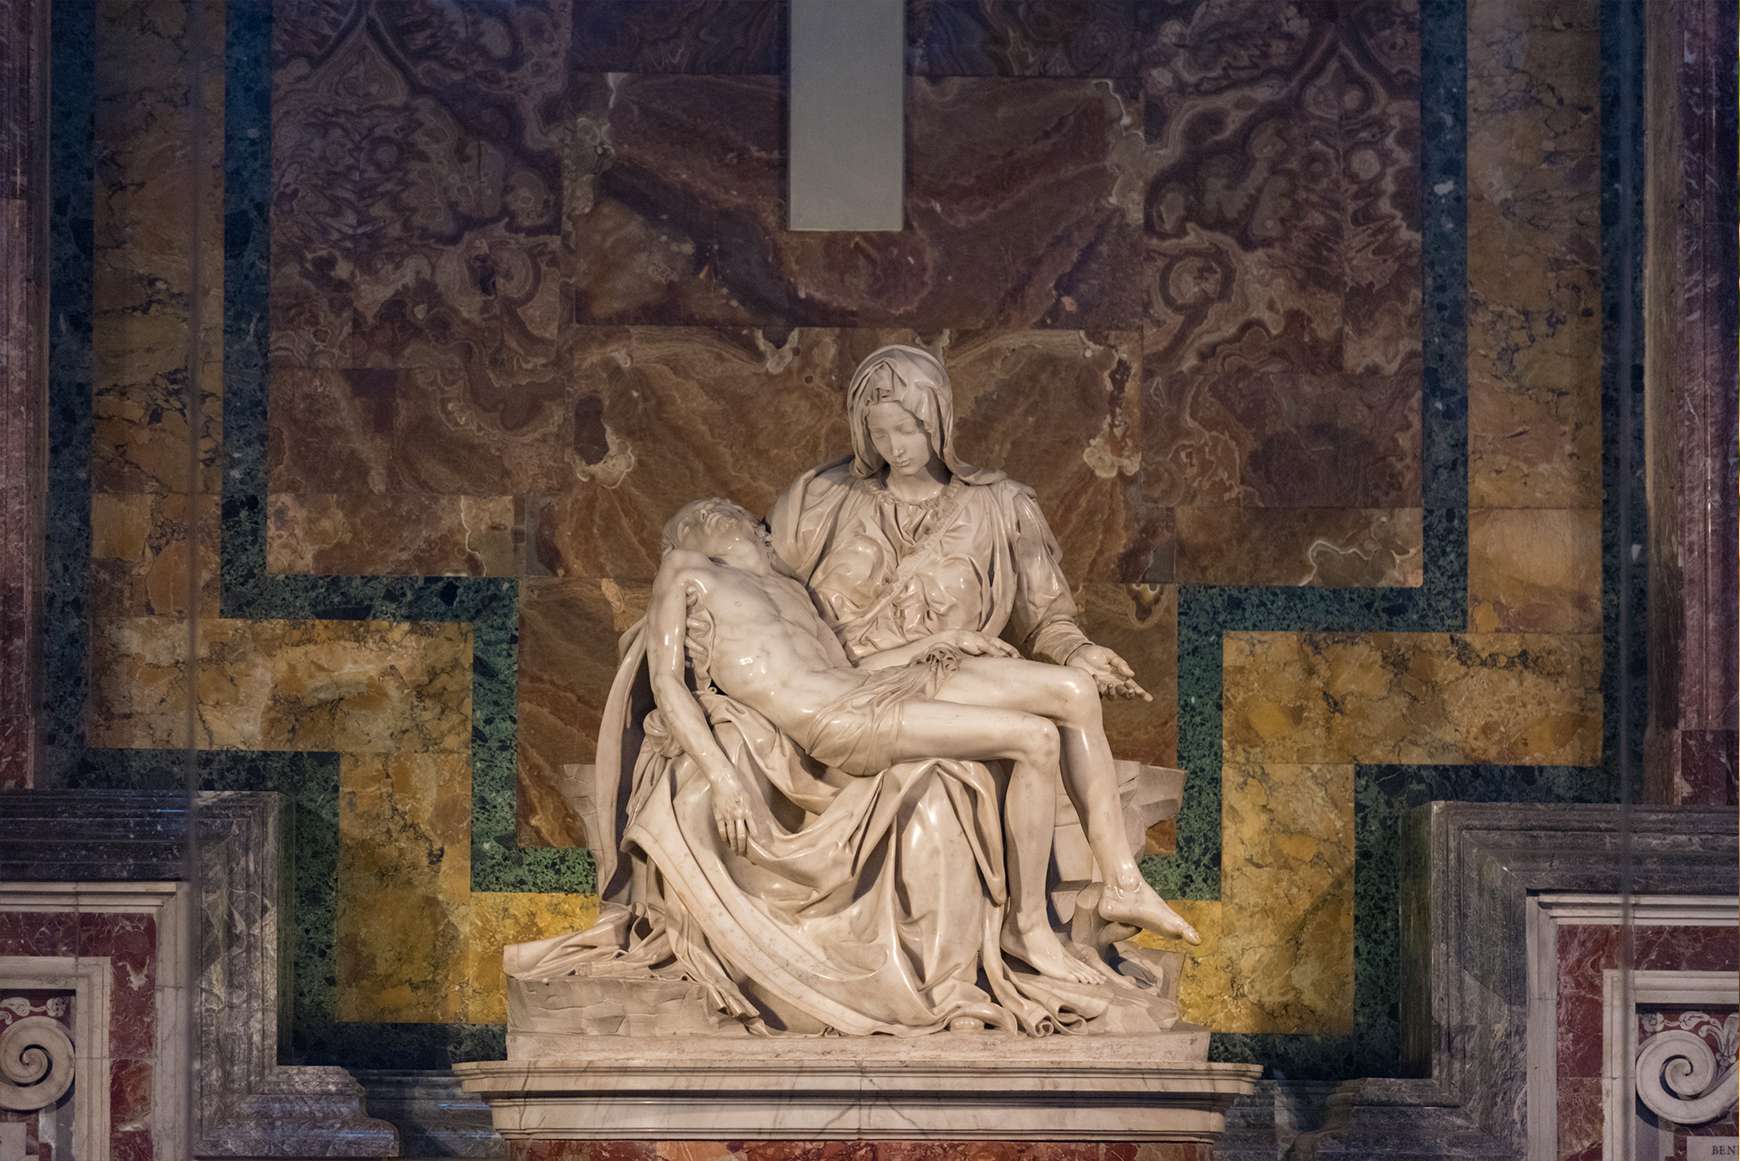 Michelangelo's La Pieta showing Mary holding Jesus' dead body